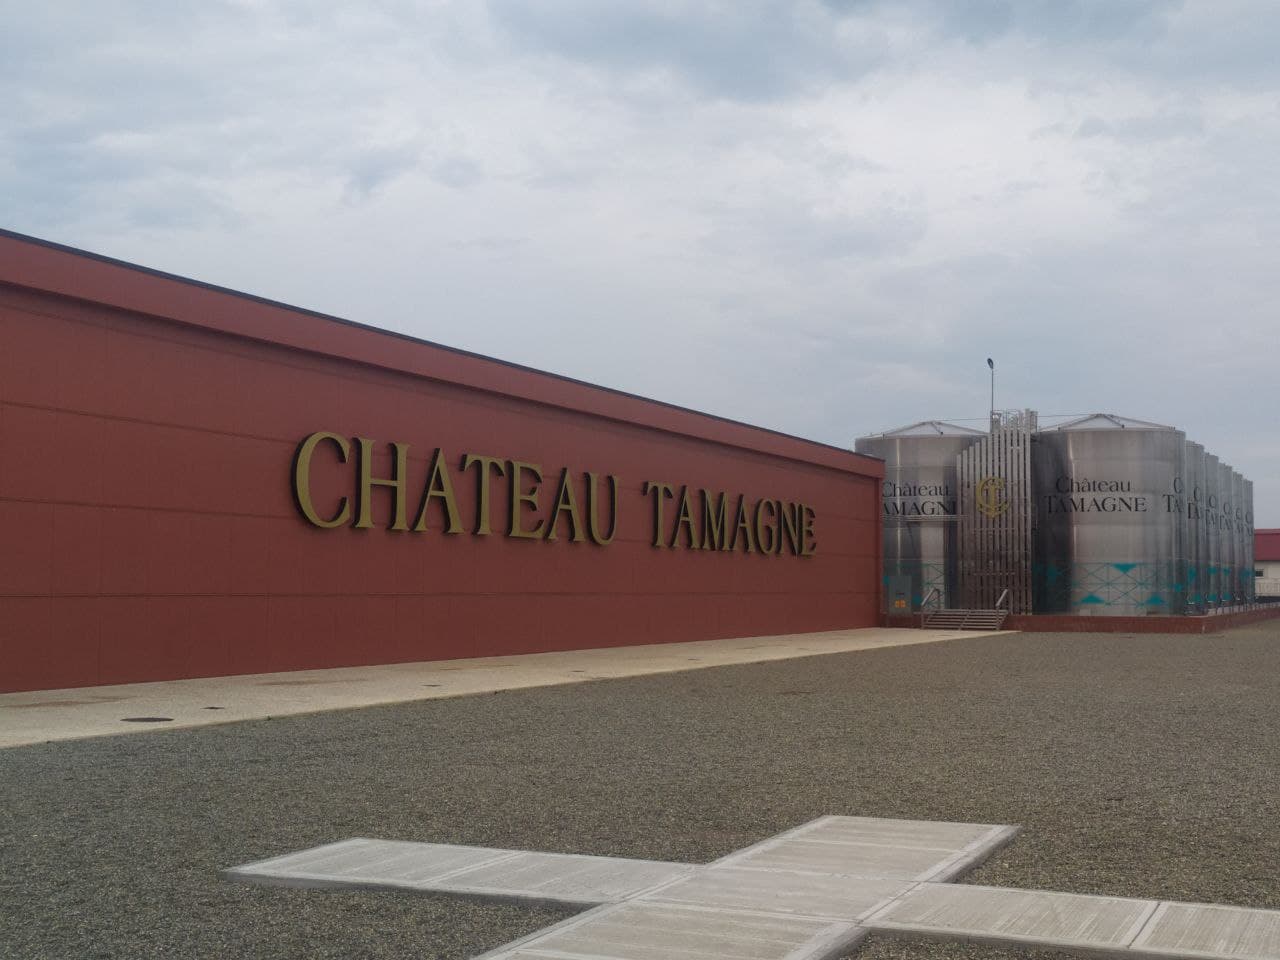 Chateau Tamagne